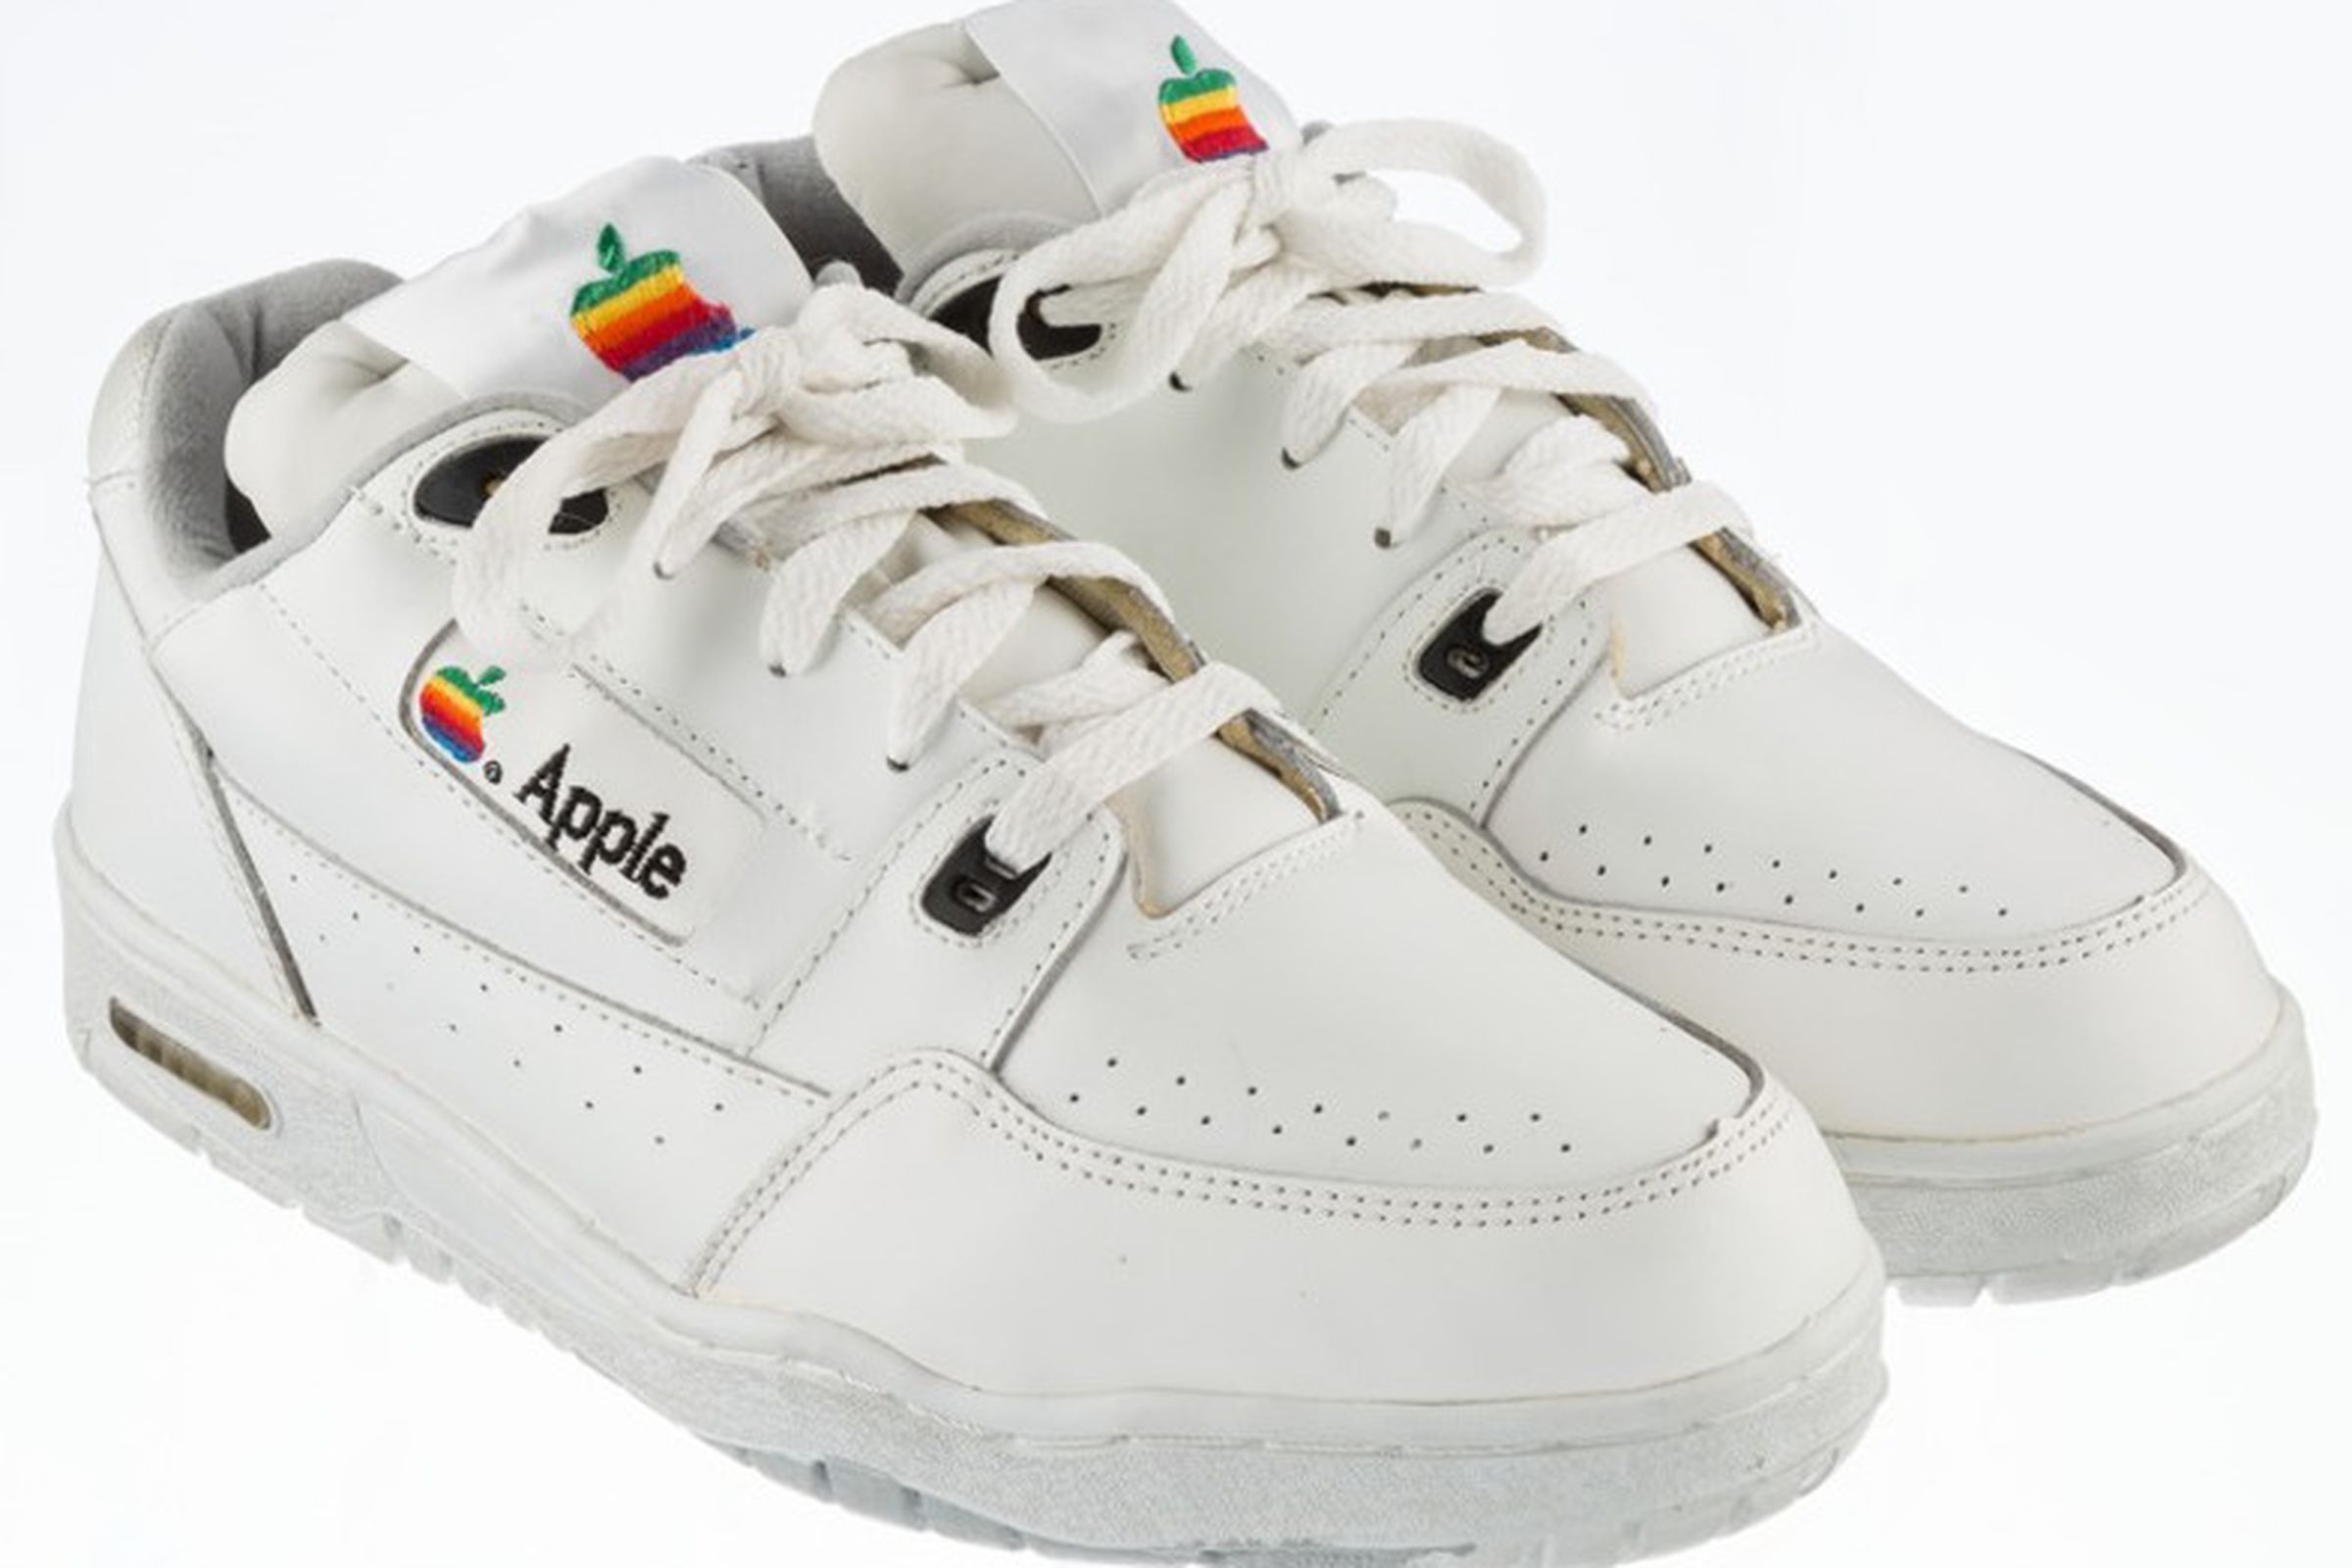 Vintage Apple sneakers